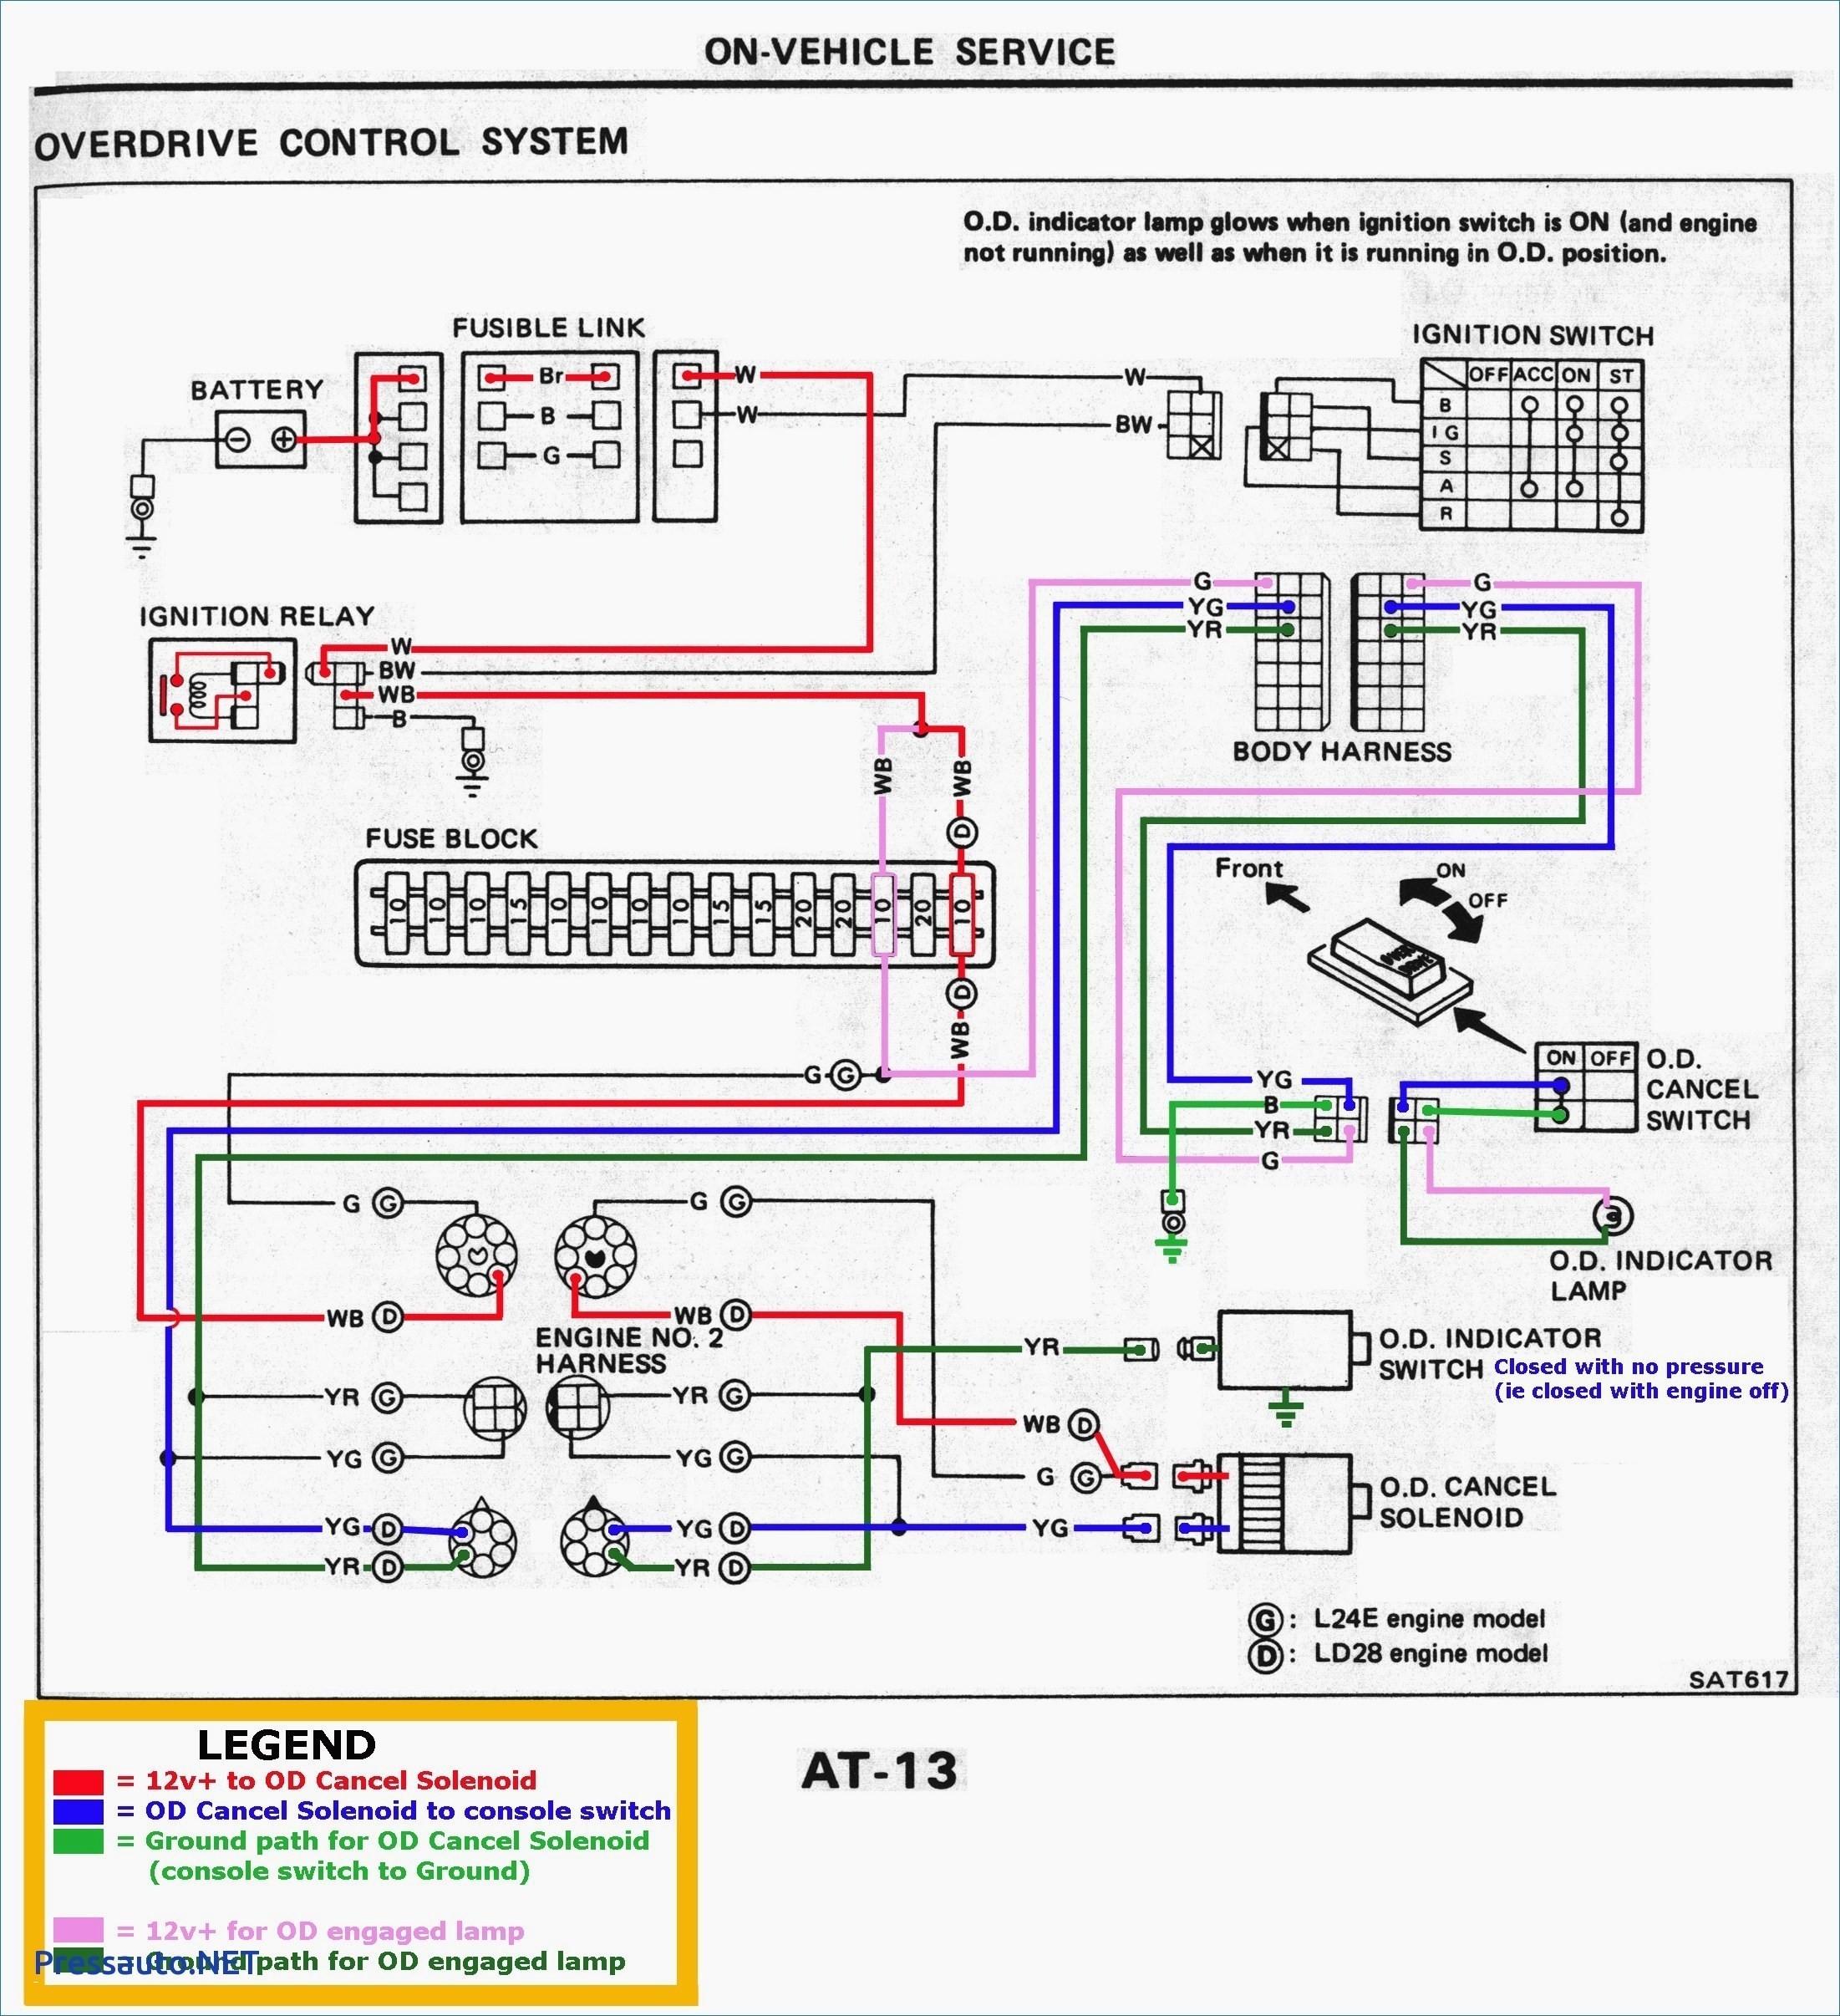 1999 Volkswagen Beetle Engine Diagram Vw R32 Wiring Diagram Experts Wiring Diagram • Of 1999 Volkswagen Beetle Engine Diagram